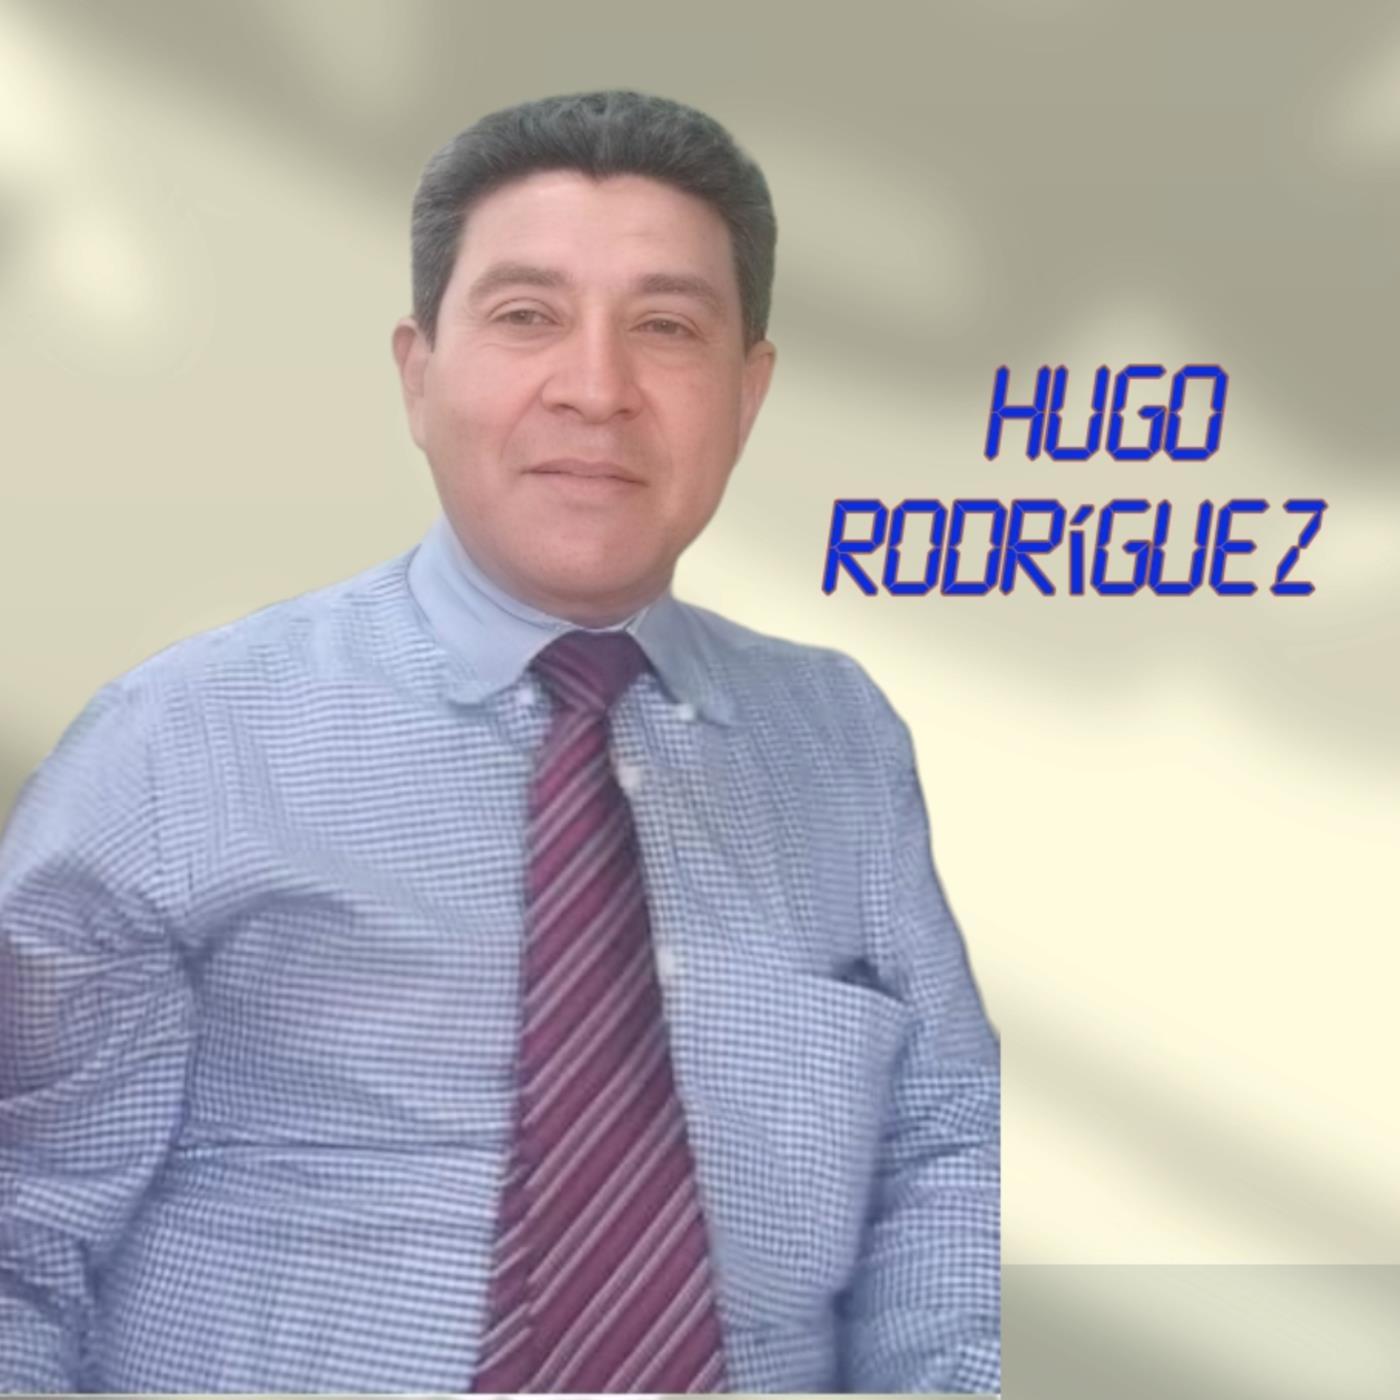 Hugo Rodriguez - Lero, Lero, Lero, Per, Per, Per